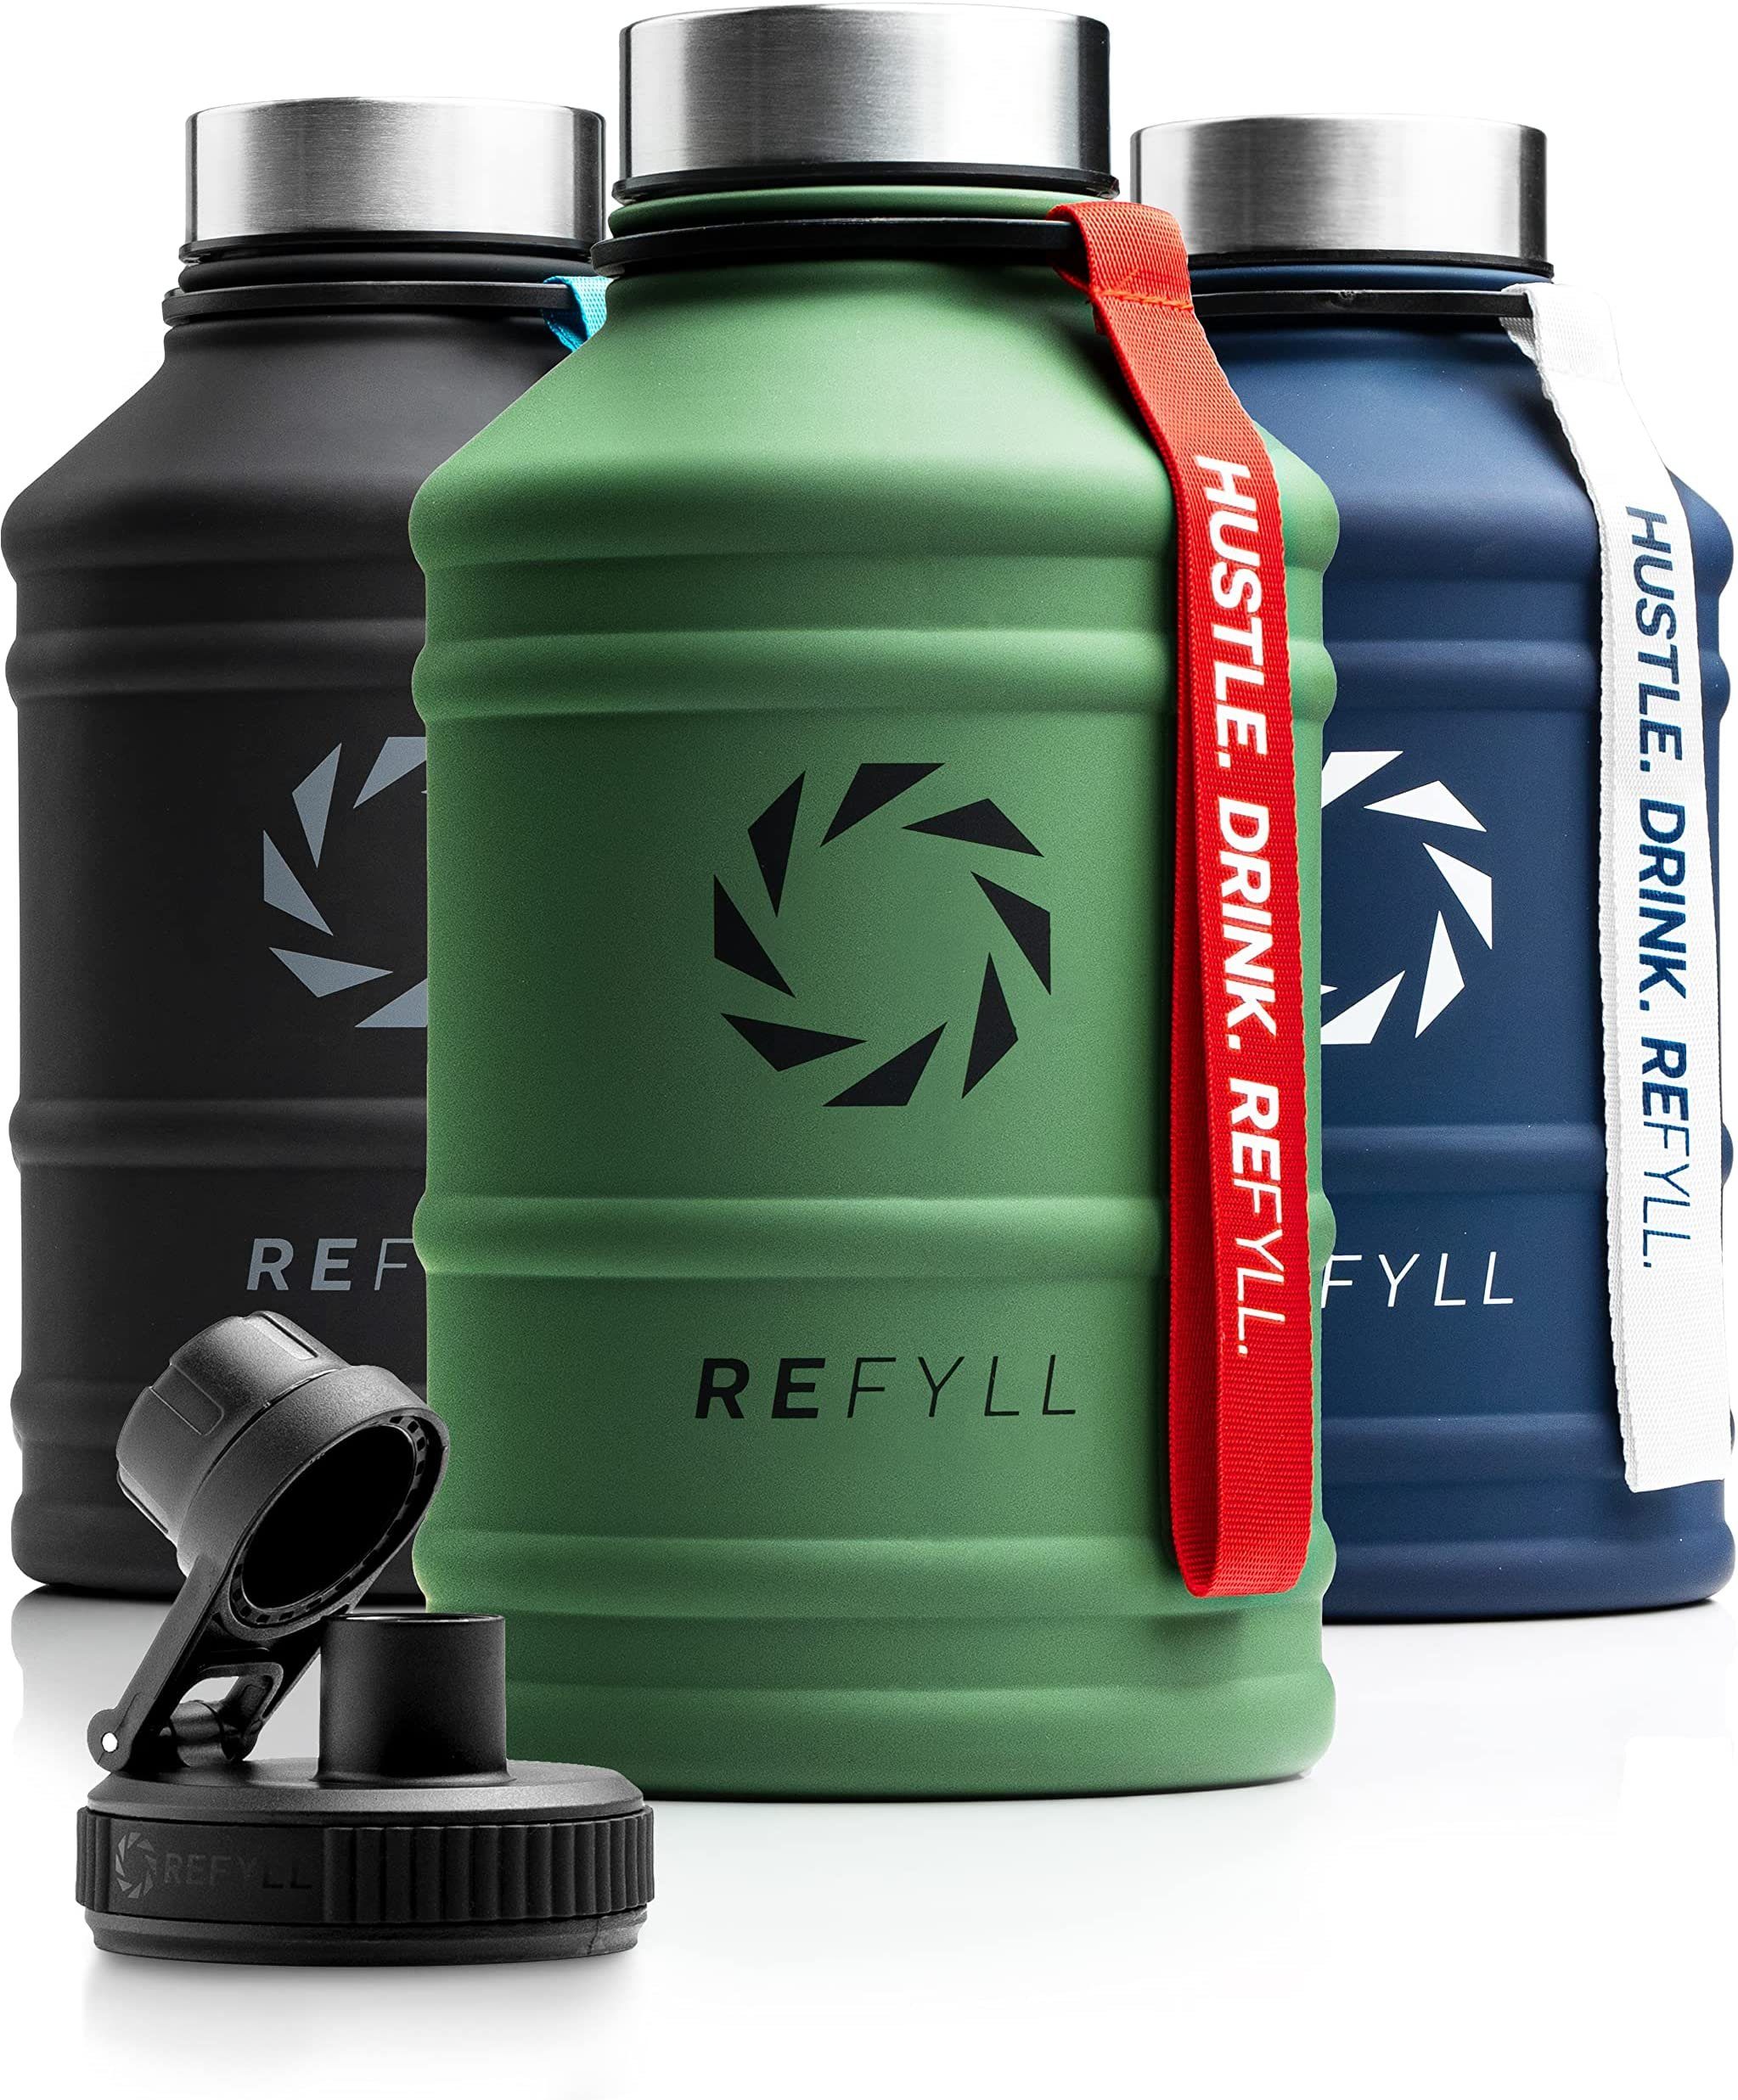 Hero REFYLL und Edelstahl auslaufsicher Water L Fitness Army Sport, 1,3L Trinkflasche Trinkflasche Jug 1,3 2,2L, Trinkflasche Auslaufsicher, für Green Gym, robust,